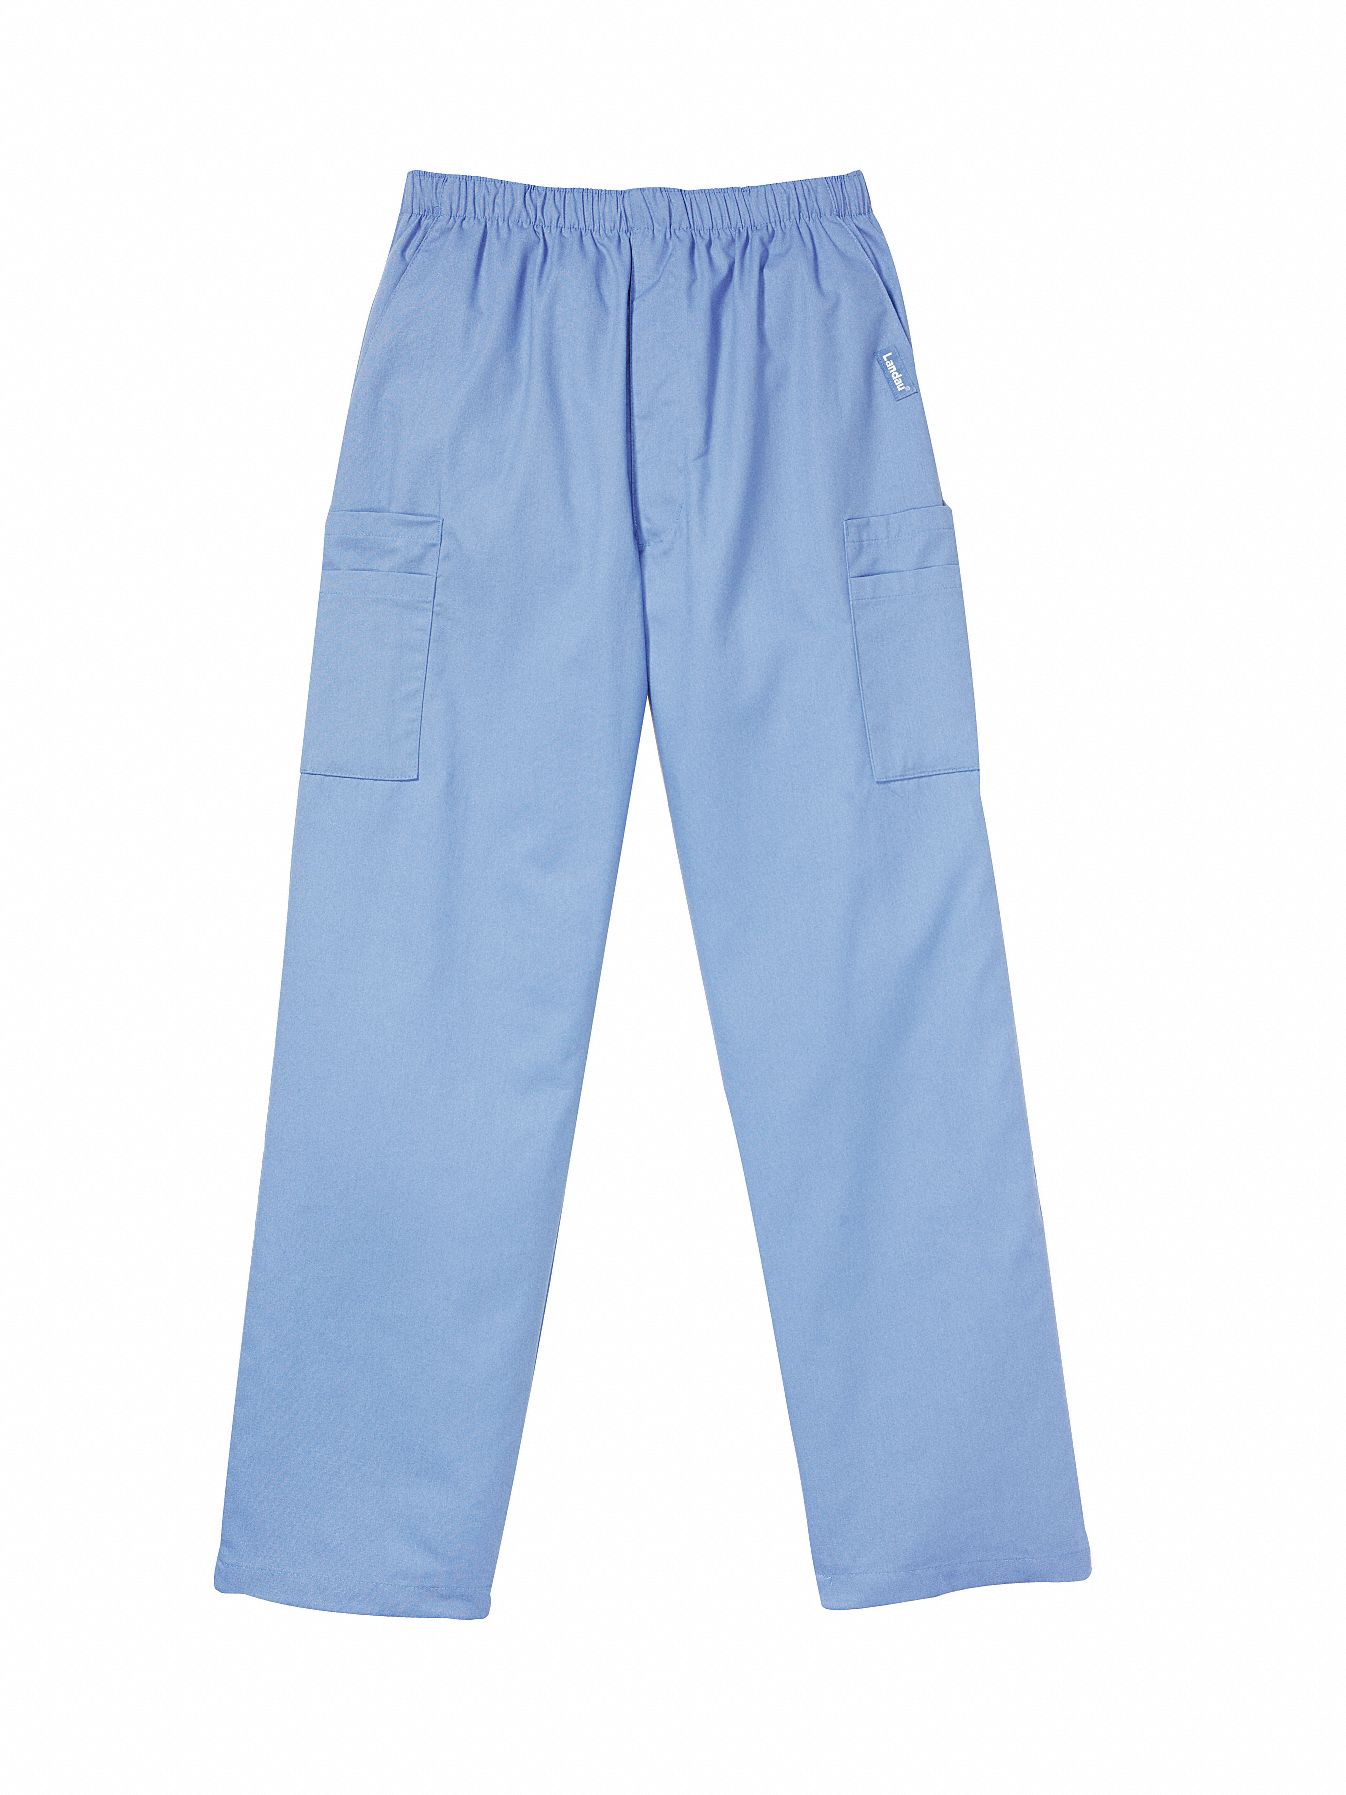 LANDAU Blue, Scrub Cargo Pants, L, Polyester/Cotton, Fits Waist Size 36 ...